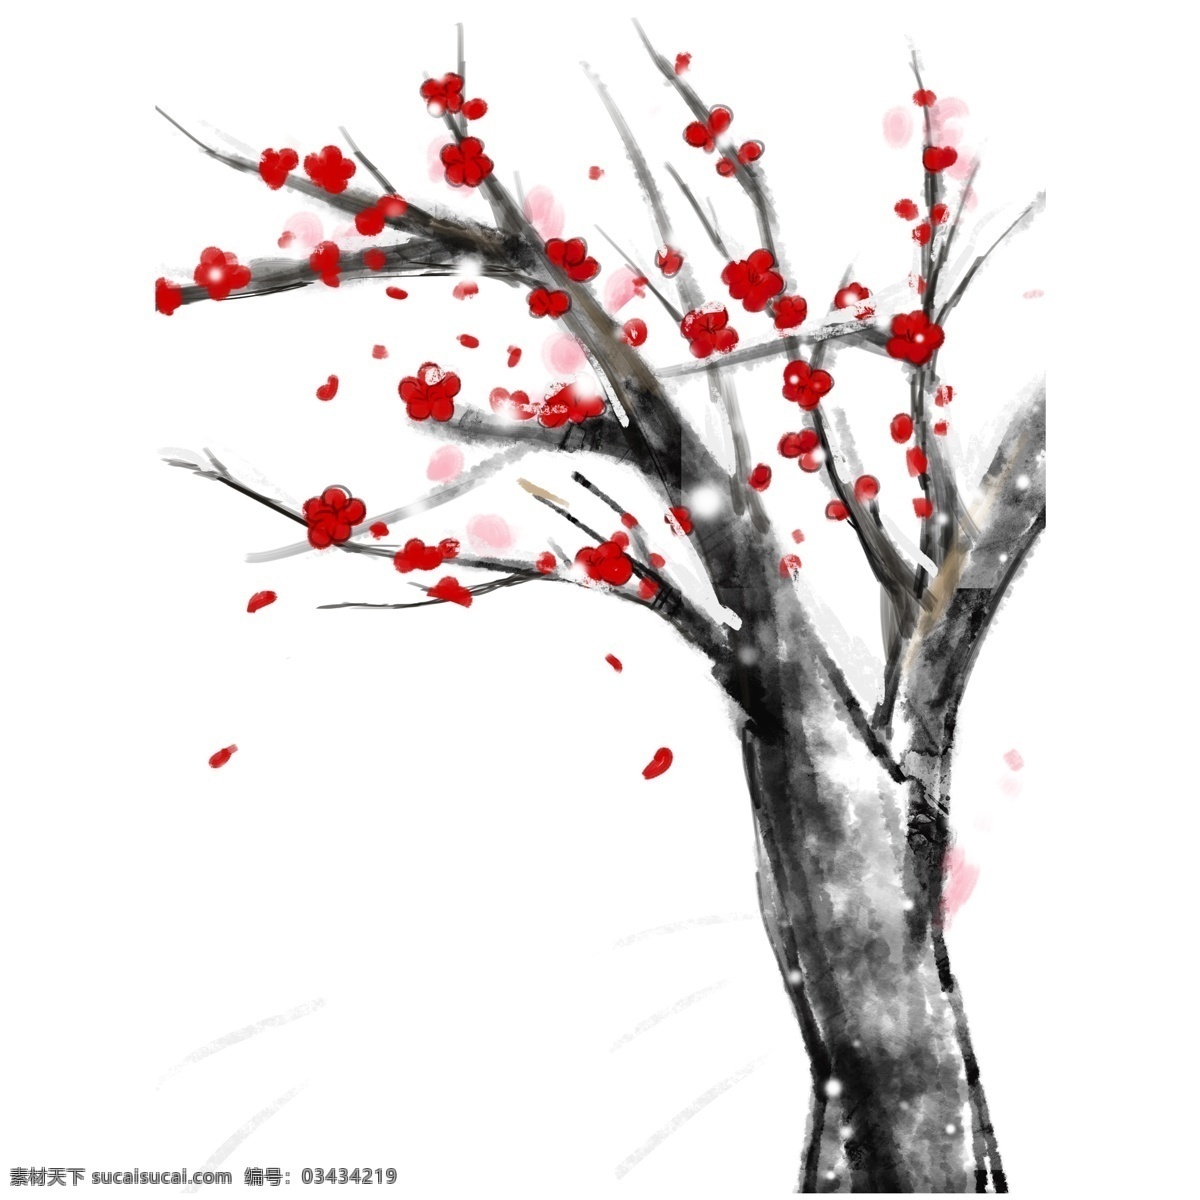 优美 古风 冬季 梅花 树 中国风 插画 红梅 手绘 梅花树 大雪 过冬